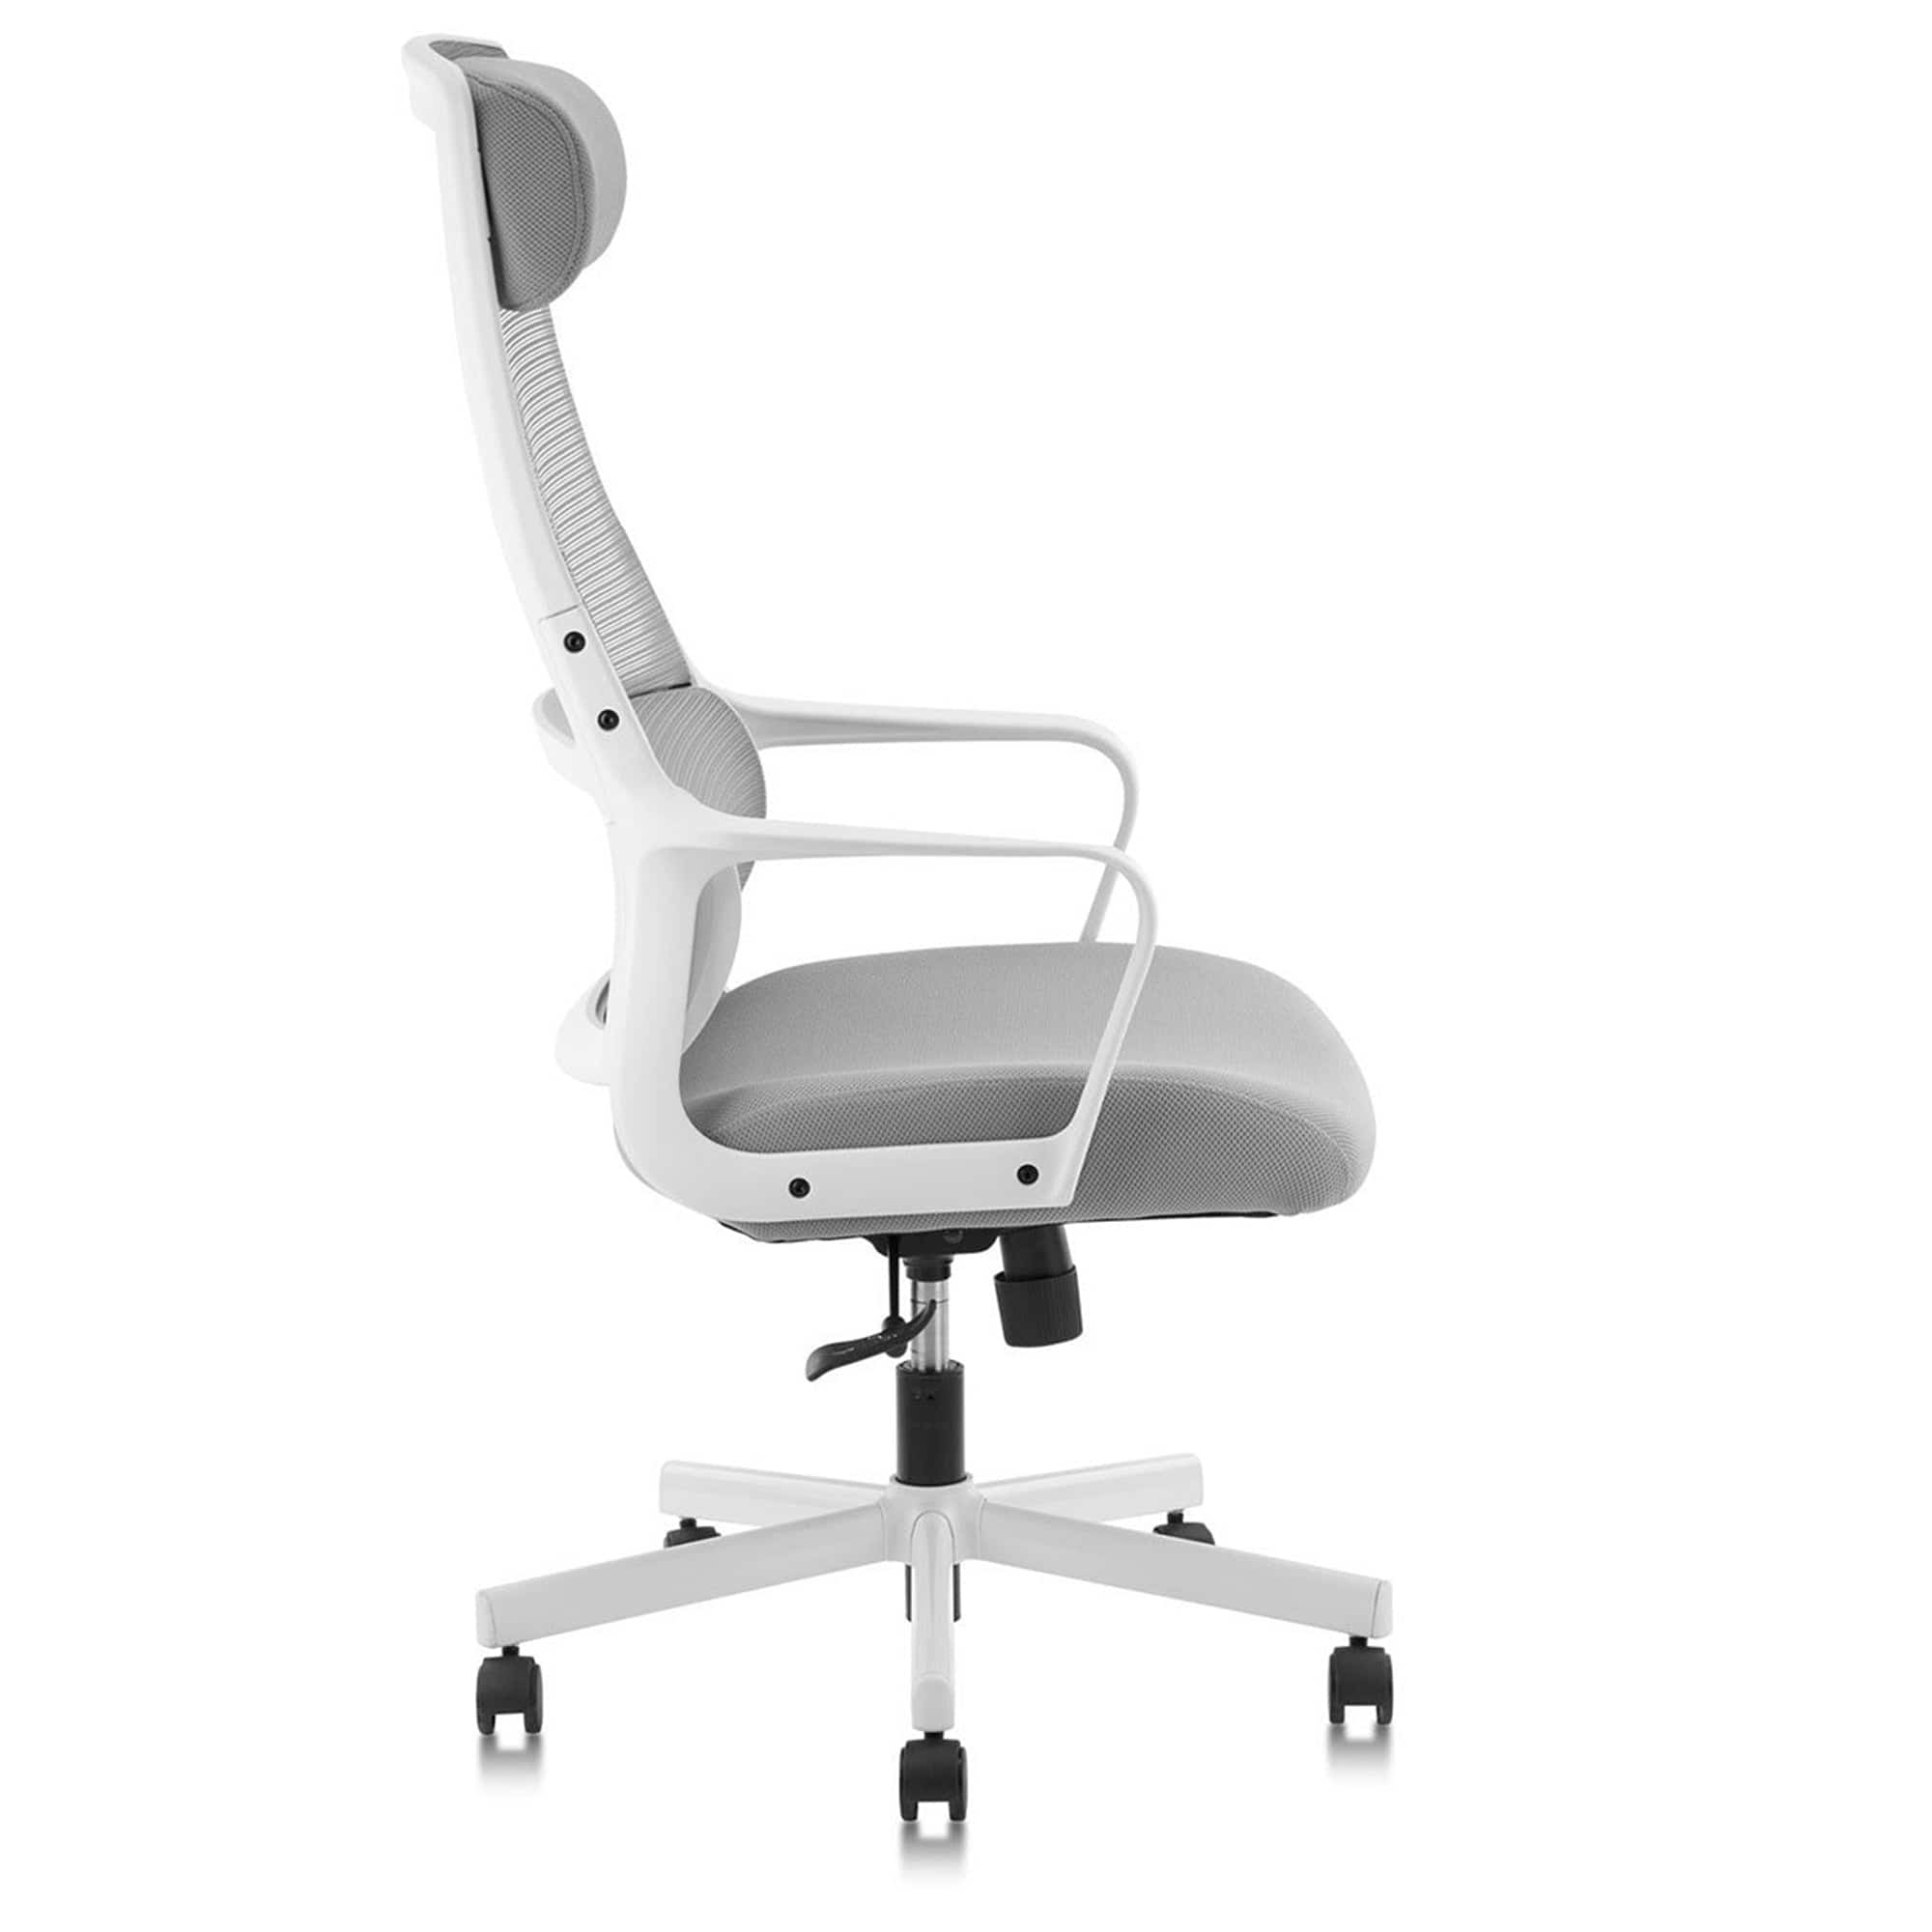 JAIR High Back Office Task Chair In Black/Grey